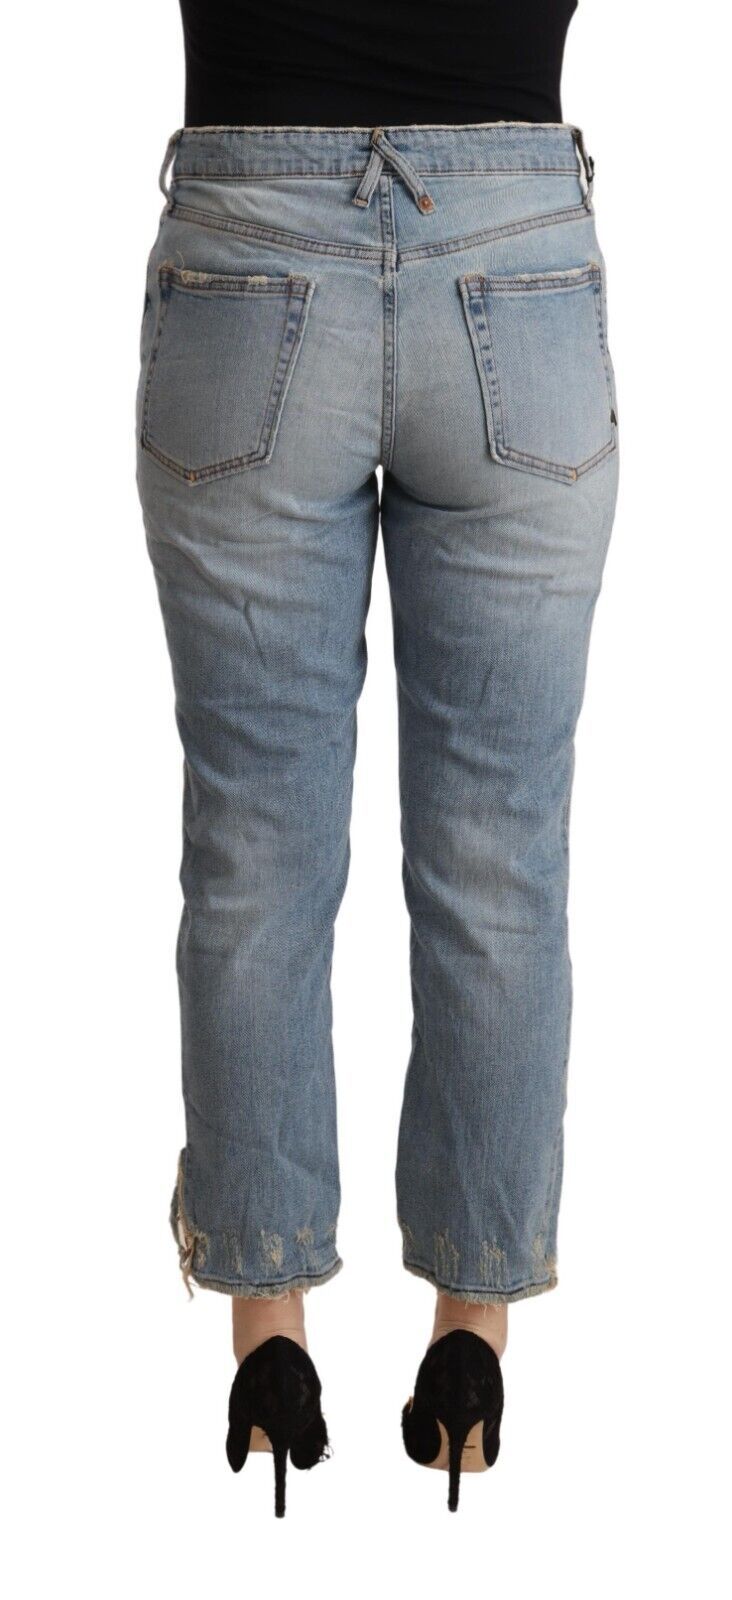 Ciclo jeans in denim corto a livello medio in difficoltà